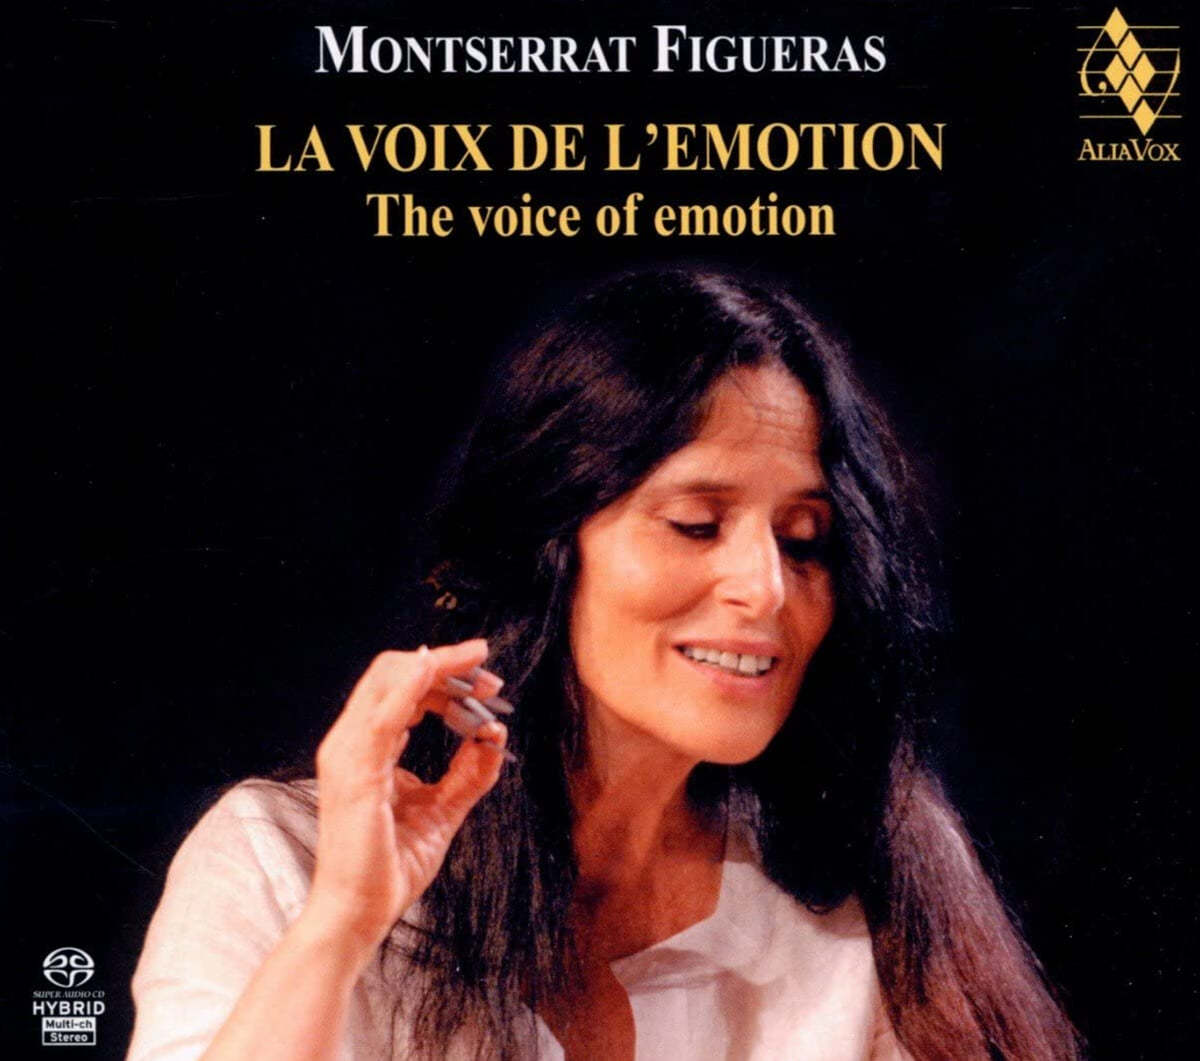 Montserrat Figueras 성모의 목소리로 - 몽세라 피구에라스 추모반 (La Voix de l’ Emotion I - The Voice of Emotion)